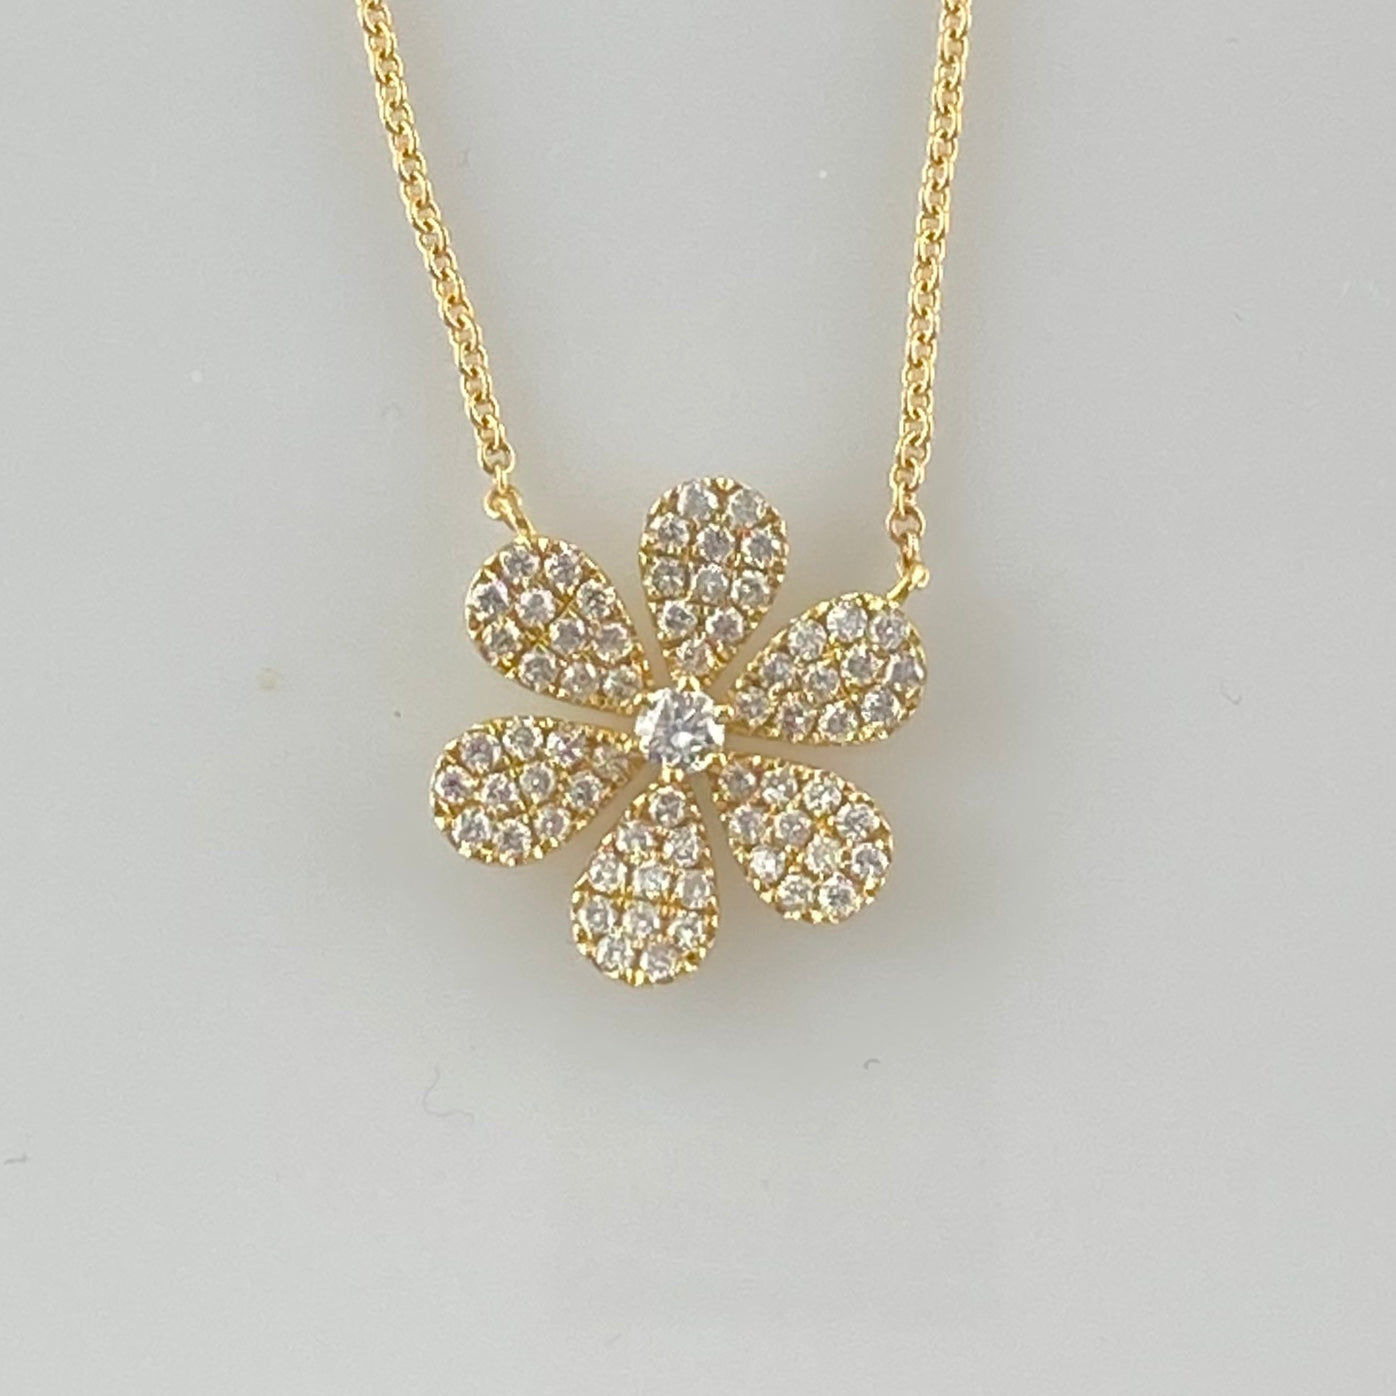 14k gold diamond daisy necklace – Ellie Jay